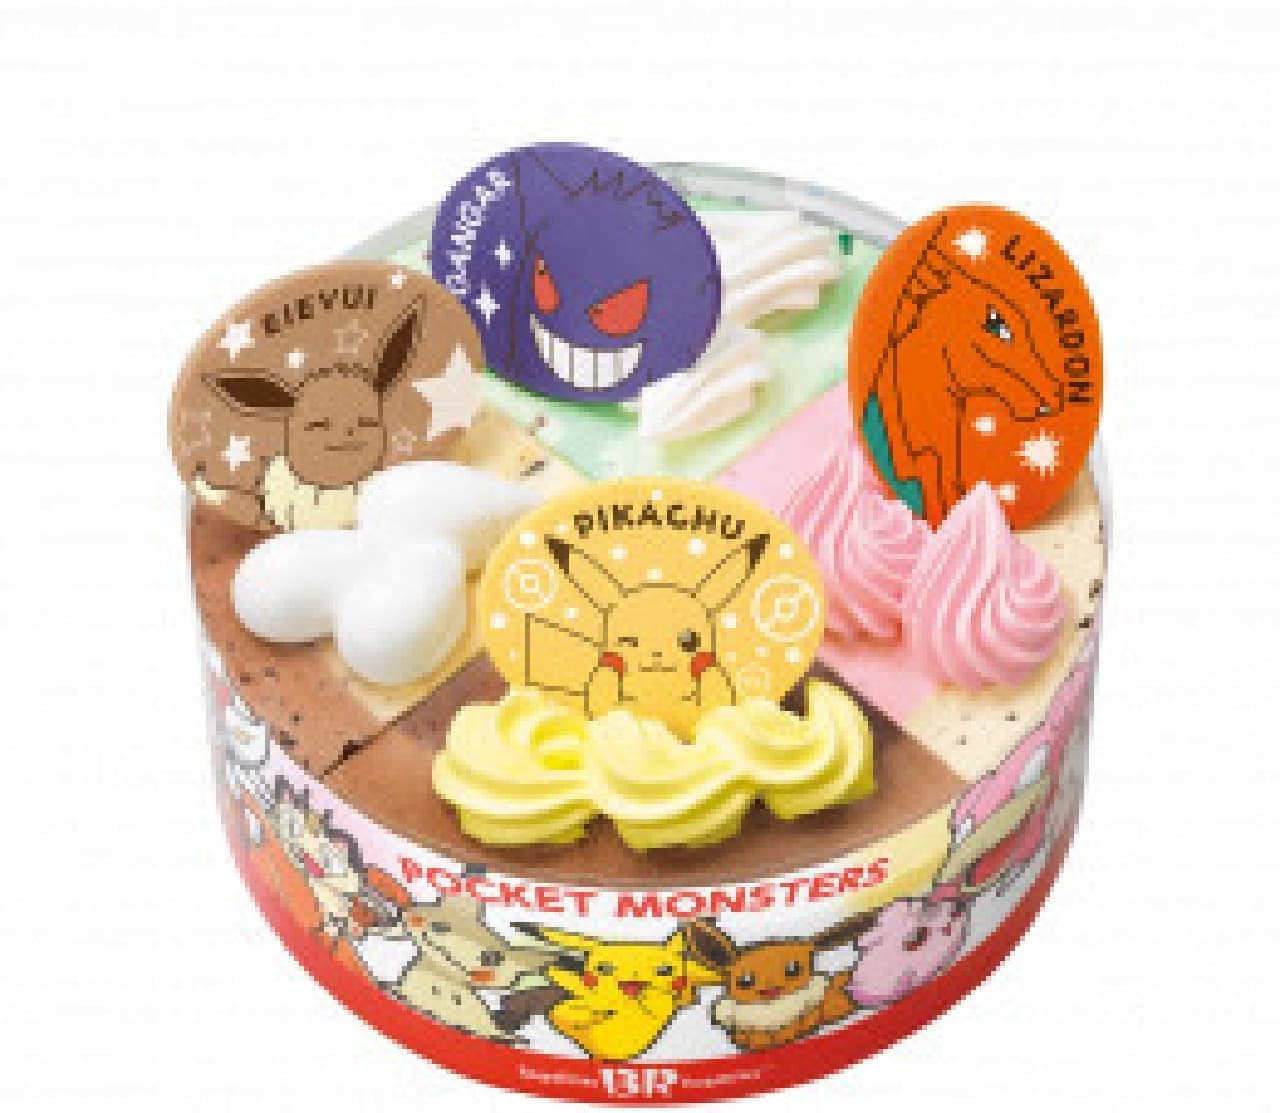 【サーティワン】お誕生日におすすめのアイスクリームケーキ特集！